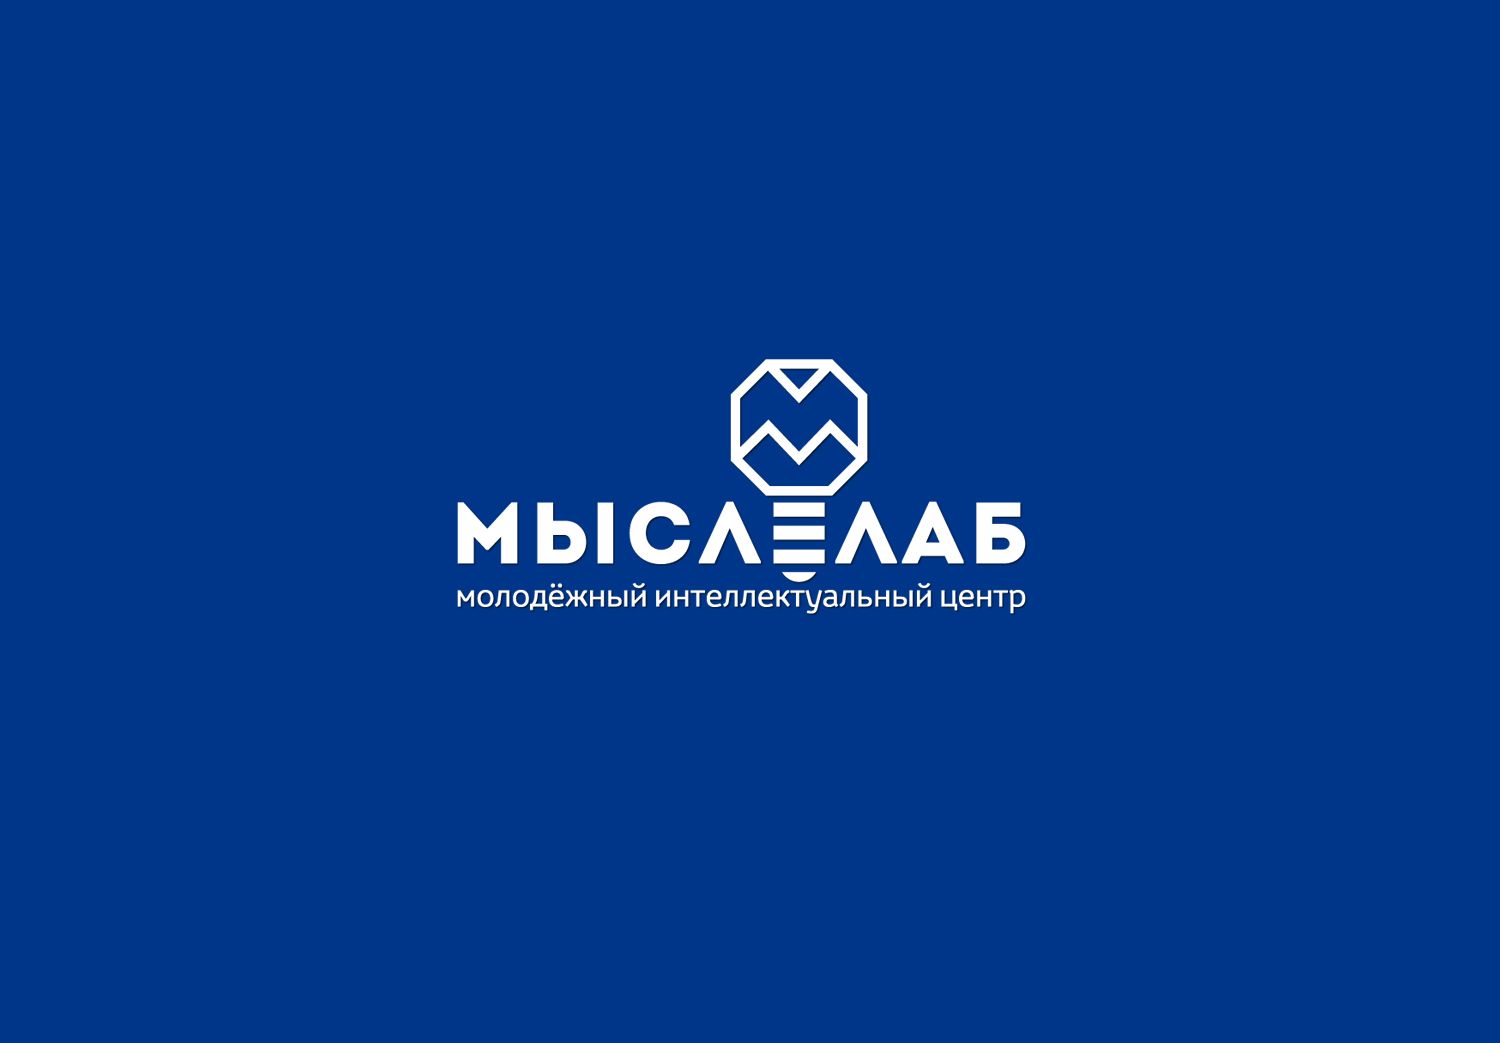 Мыслелаб! Логотип для интеллектуального центра - дизайнер mz777